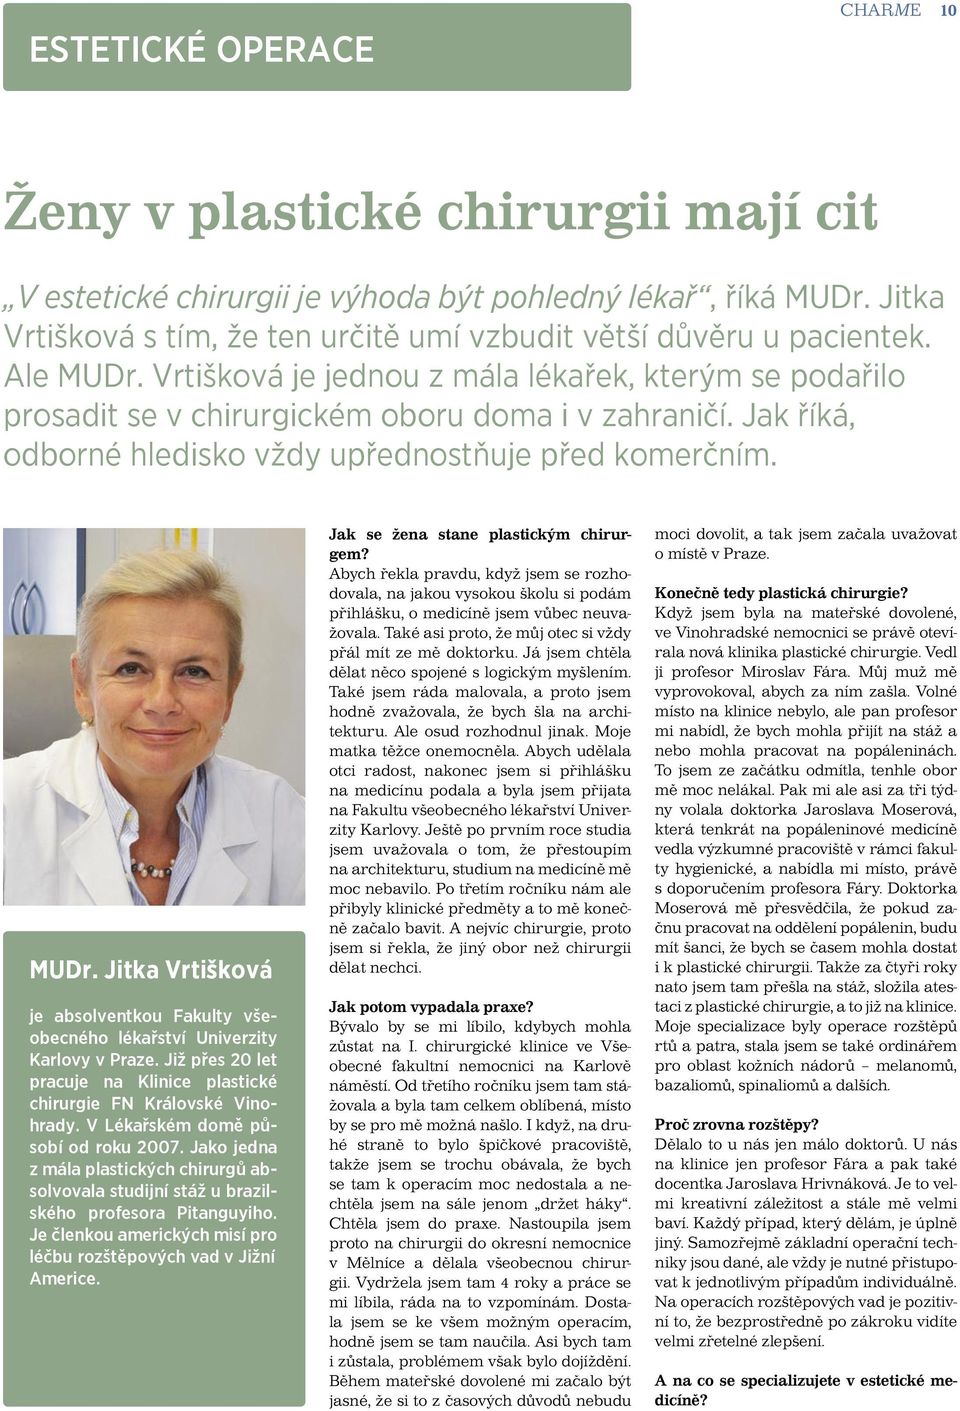 Jak říká, odborné hledisko vždy upřednostňuje před komerčním. MUDr. Jitka Vrtišková je absolventkou Fakulty všeobecného lékařství Univerzity Karlovy v Praze.